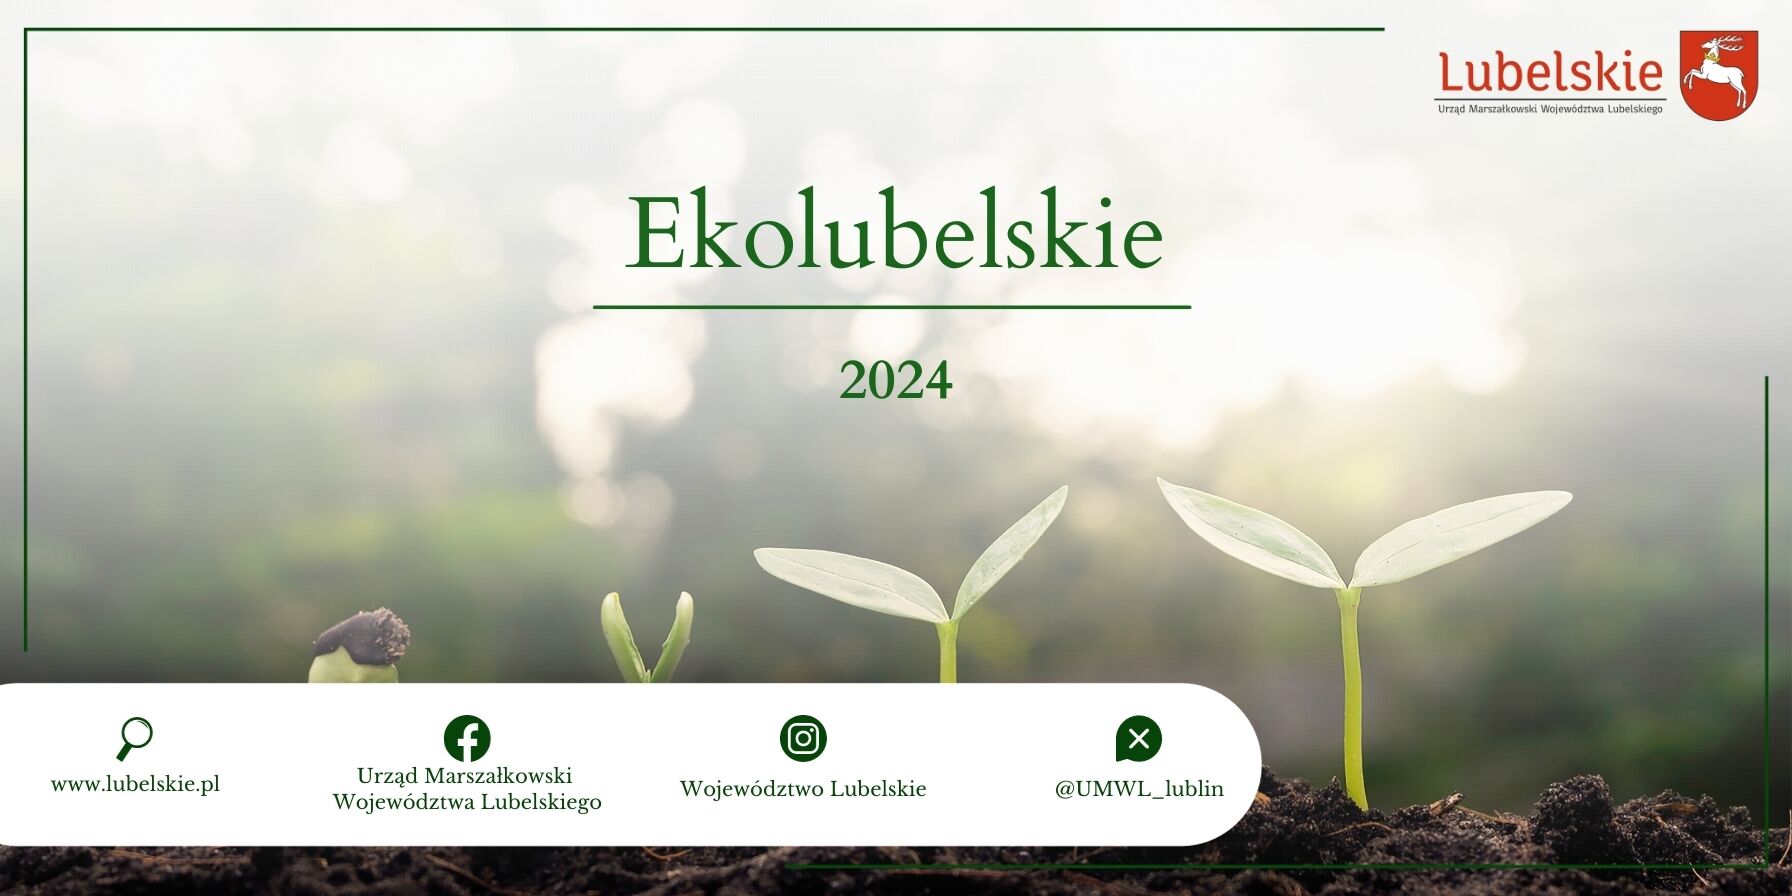 Plakat promocyjny z grafiką przedstawiającą młode rośliny na tle zamglonego lasu z napisem "EkoLubelskie 2024" i logotypami instytucji.